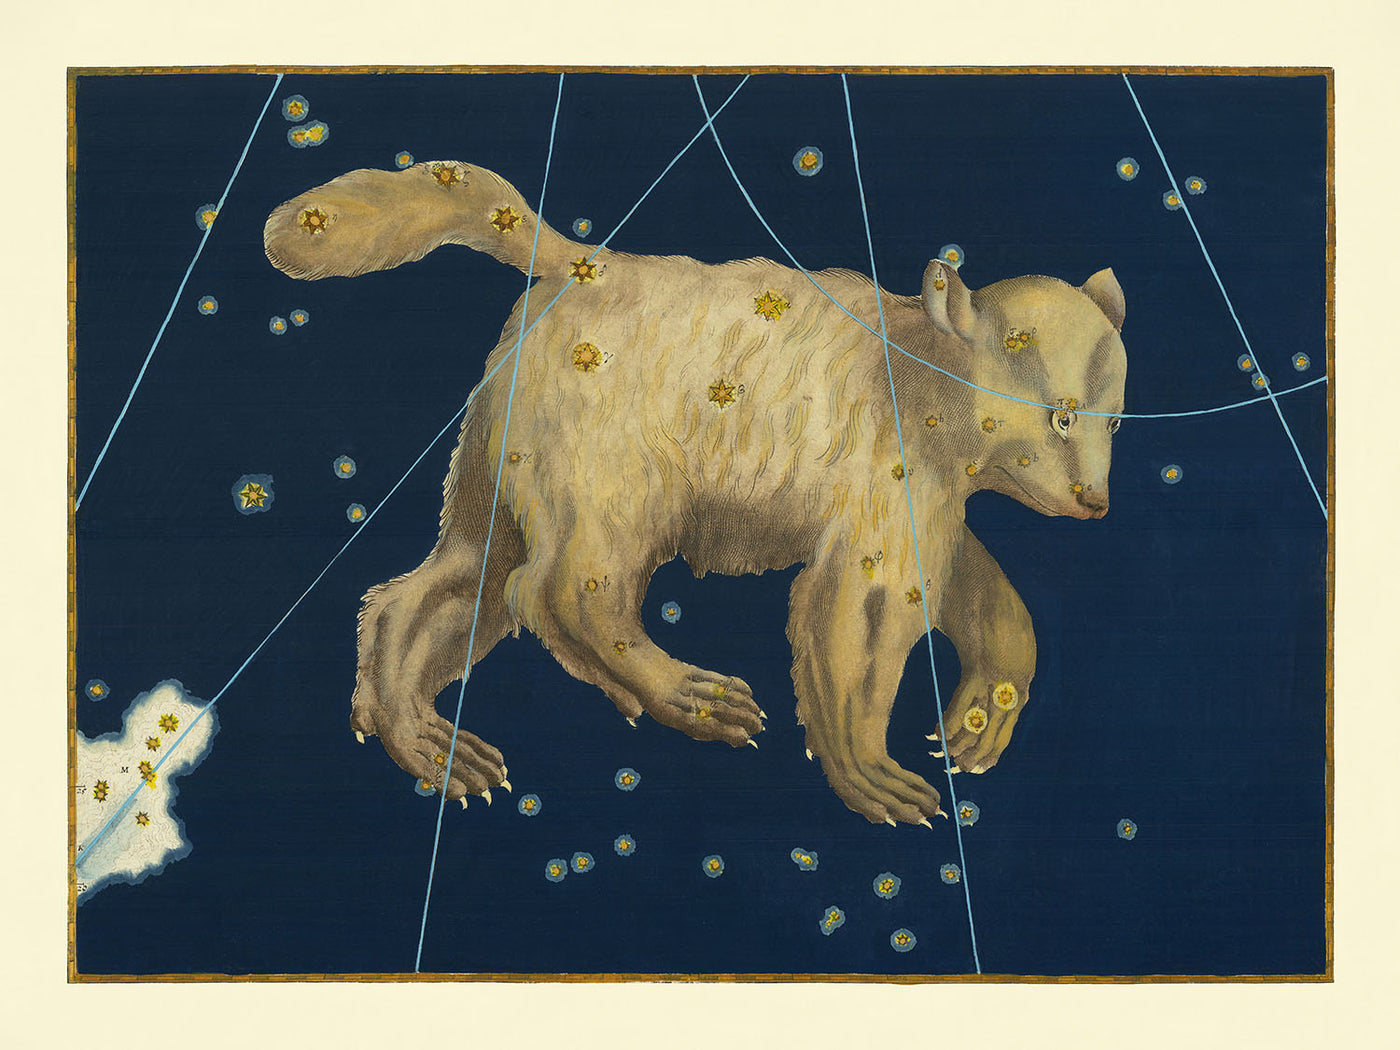 Ancienne carte des étoiles de la Grande Ourse par Johann Bayer, 1603